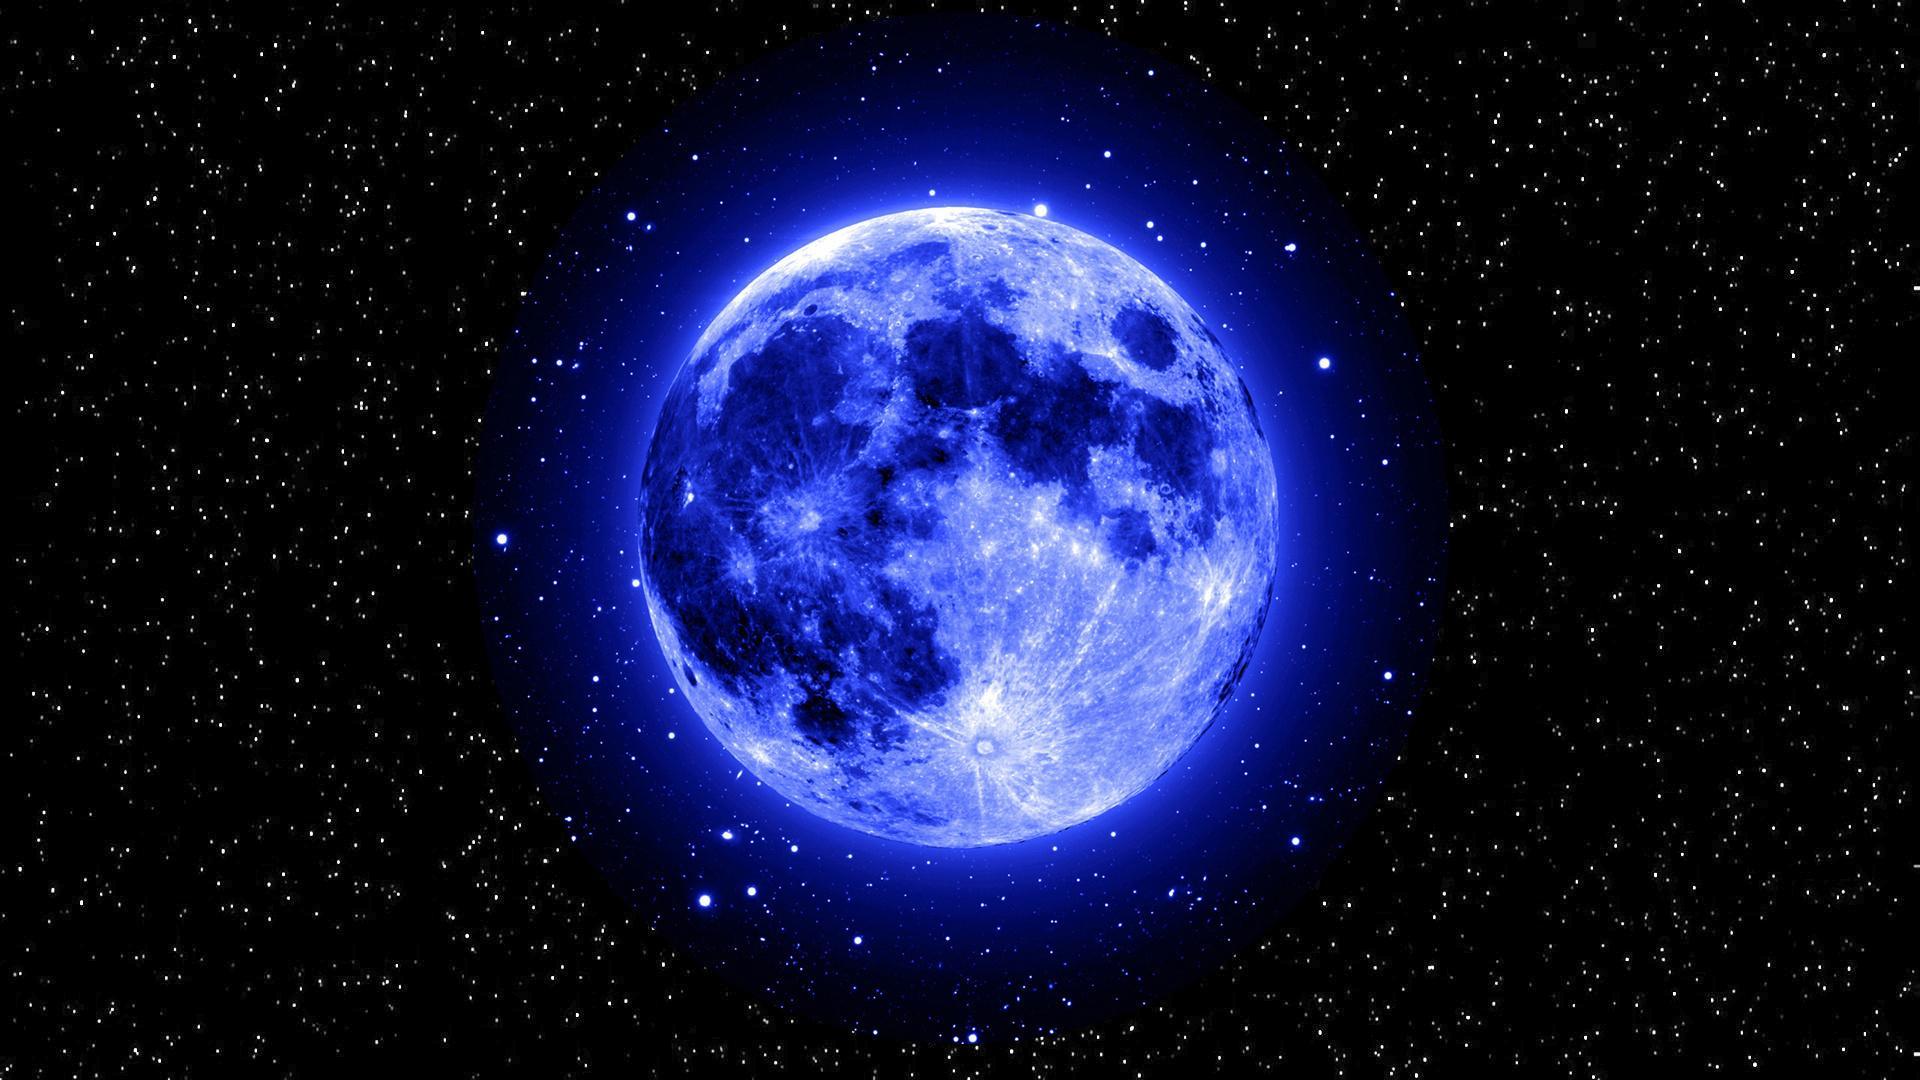 Nền trăng xanh lung linh trên bầu trời đêm tạo nên cảm giác tươi mới và ngọt ngào. Hãy dành thời gian để chiêm ngưỡng bức ảnh đầy mê hoặc này và mơ mộng giữa trời đêm rực rỡ.